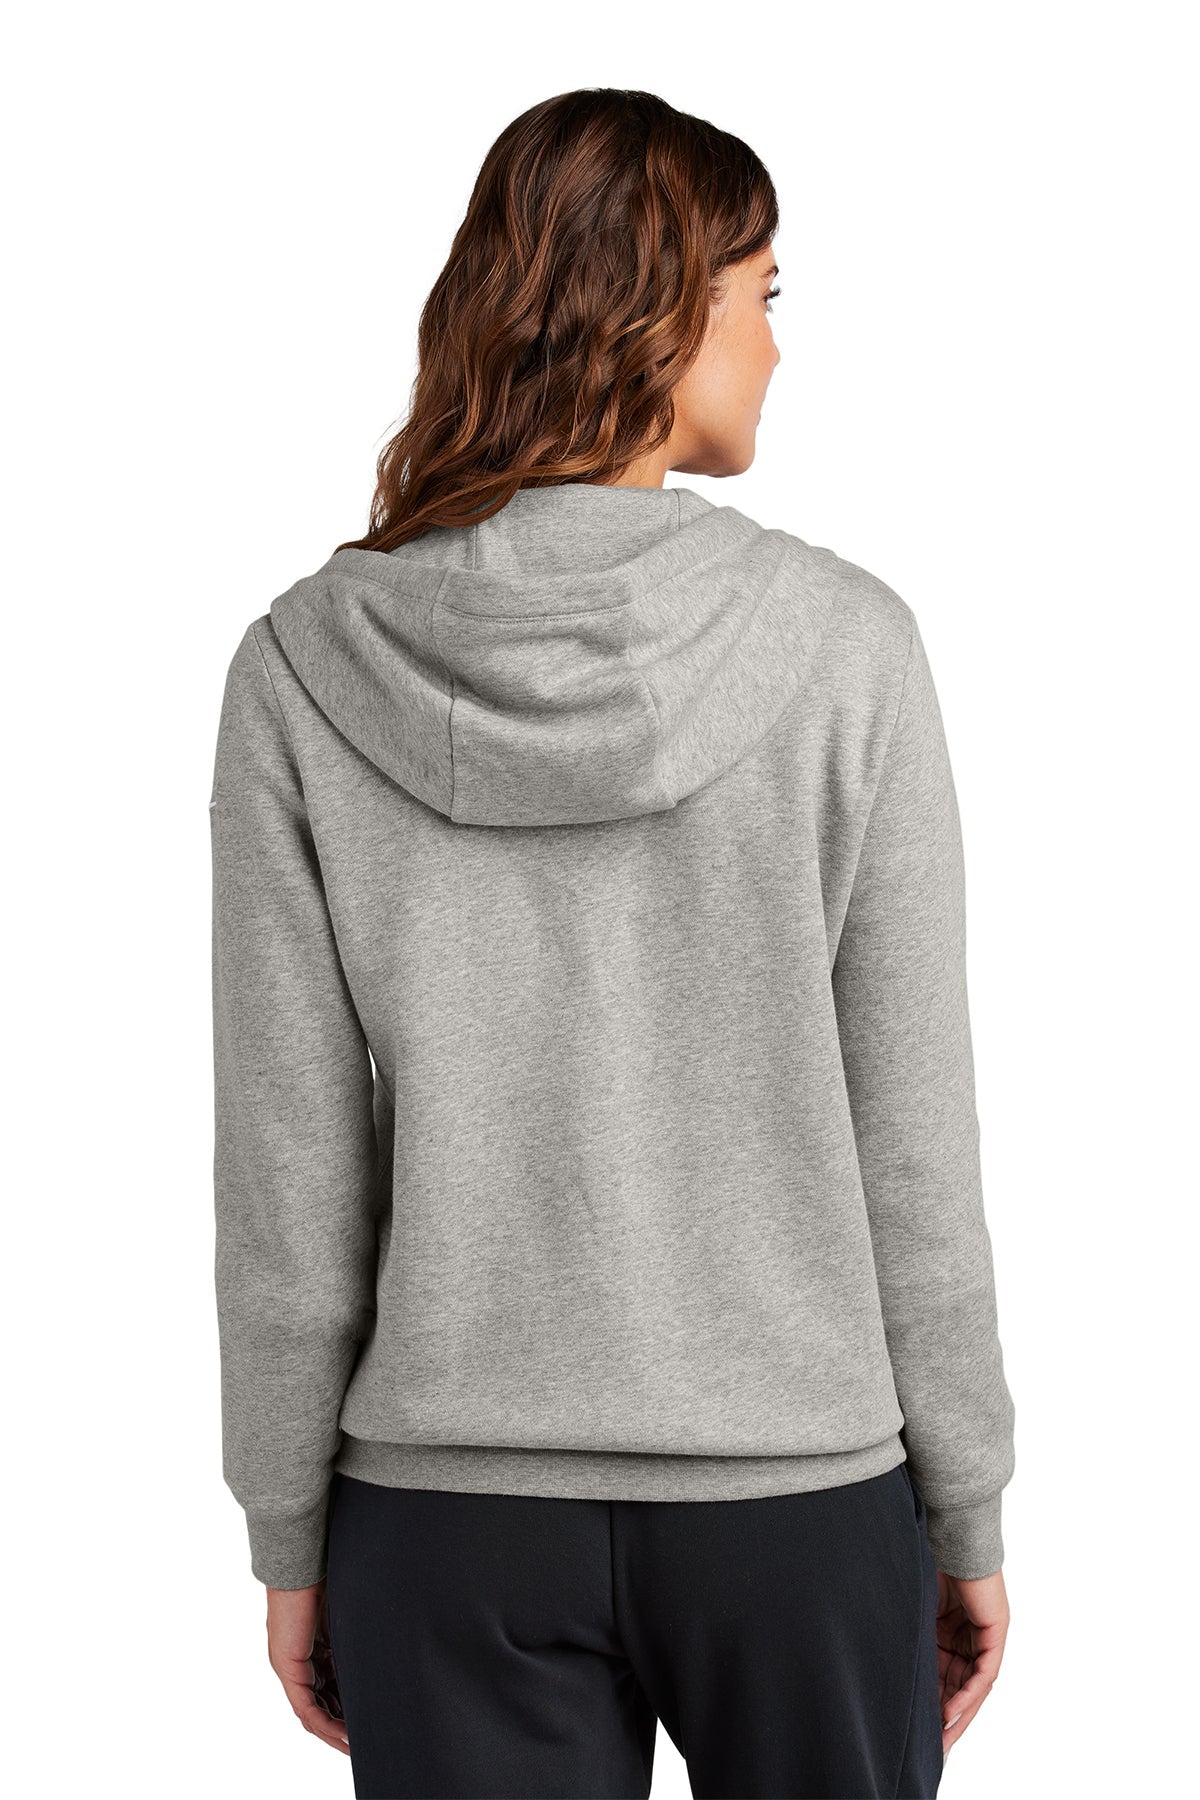 Nike Ladies Club Fleece Full-Zip Custom Hoodies, Dark Grey Heather